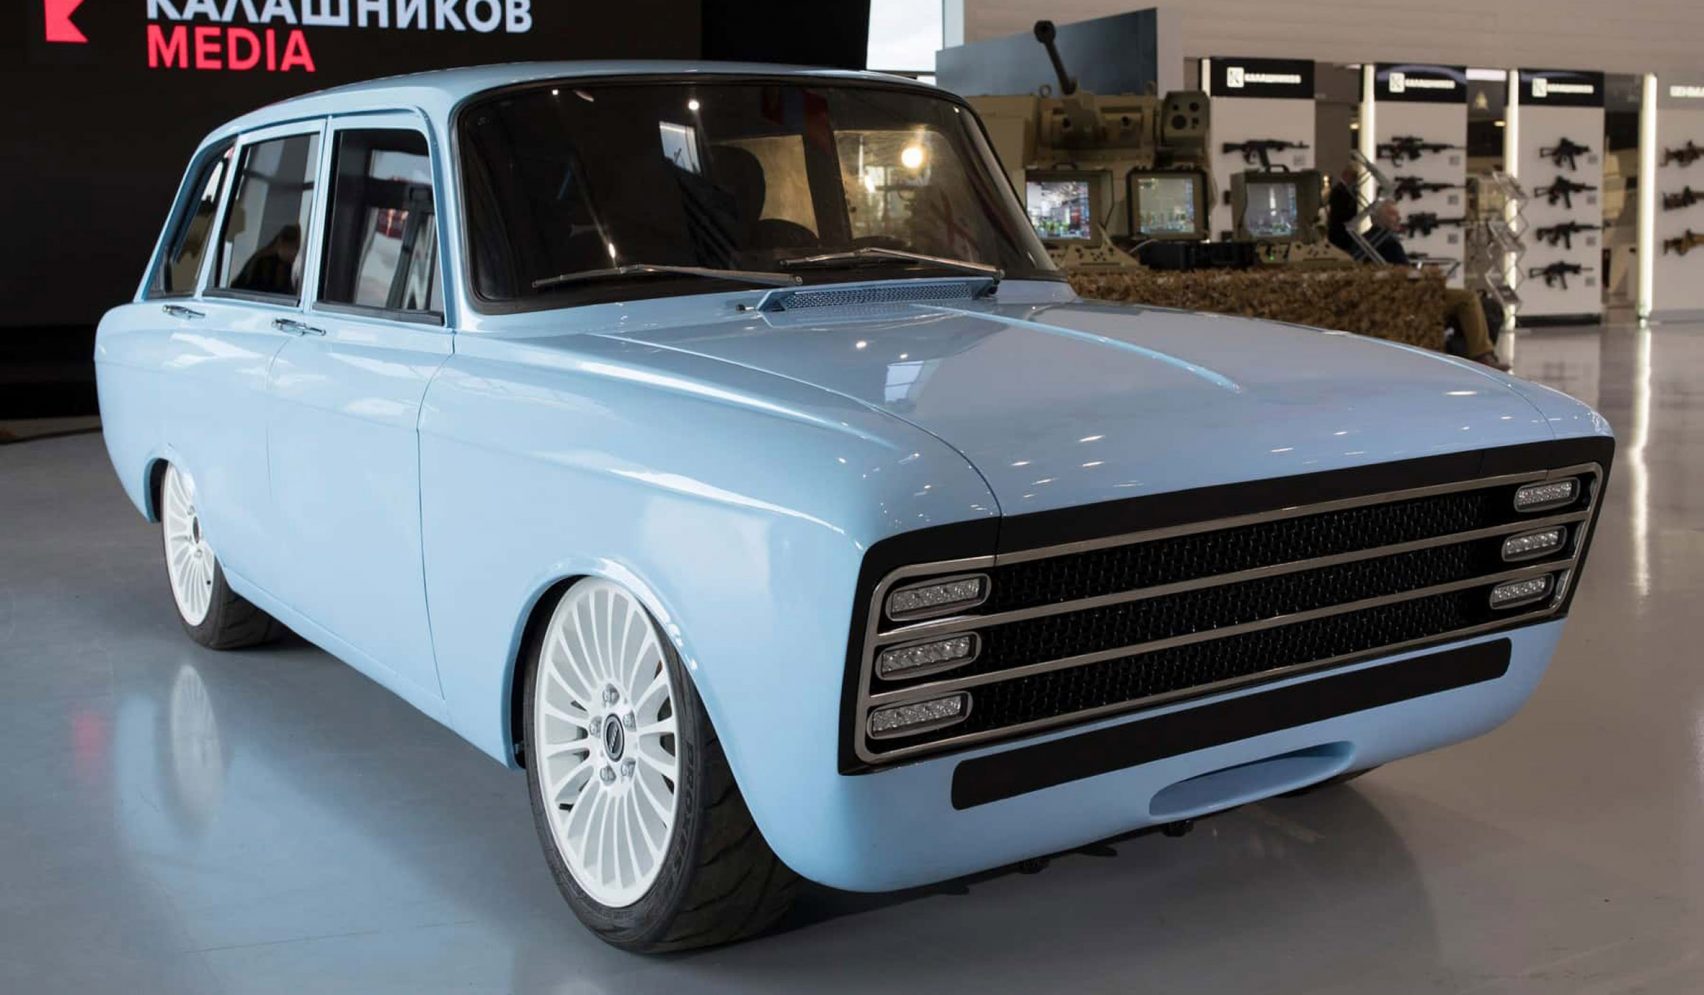 kalashnikov-prototype-electric-car-design_dezeen_2364_hero-1704x995.jpg